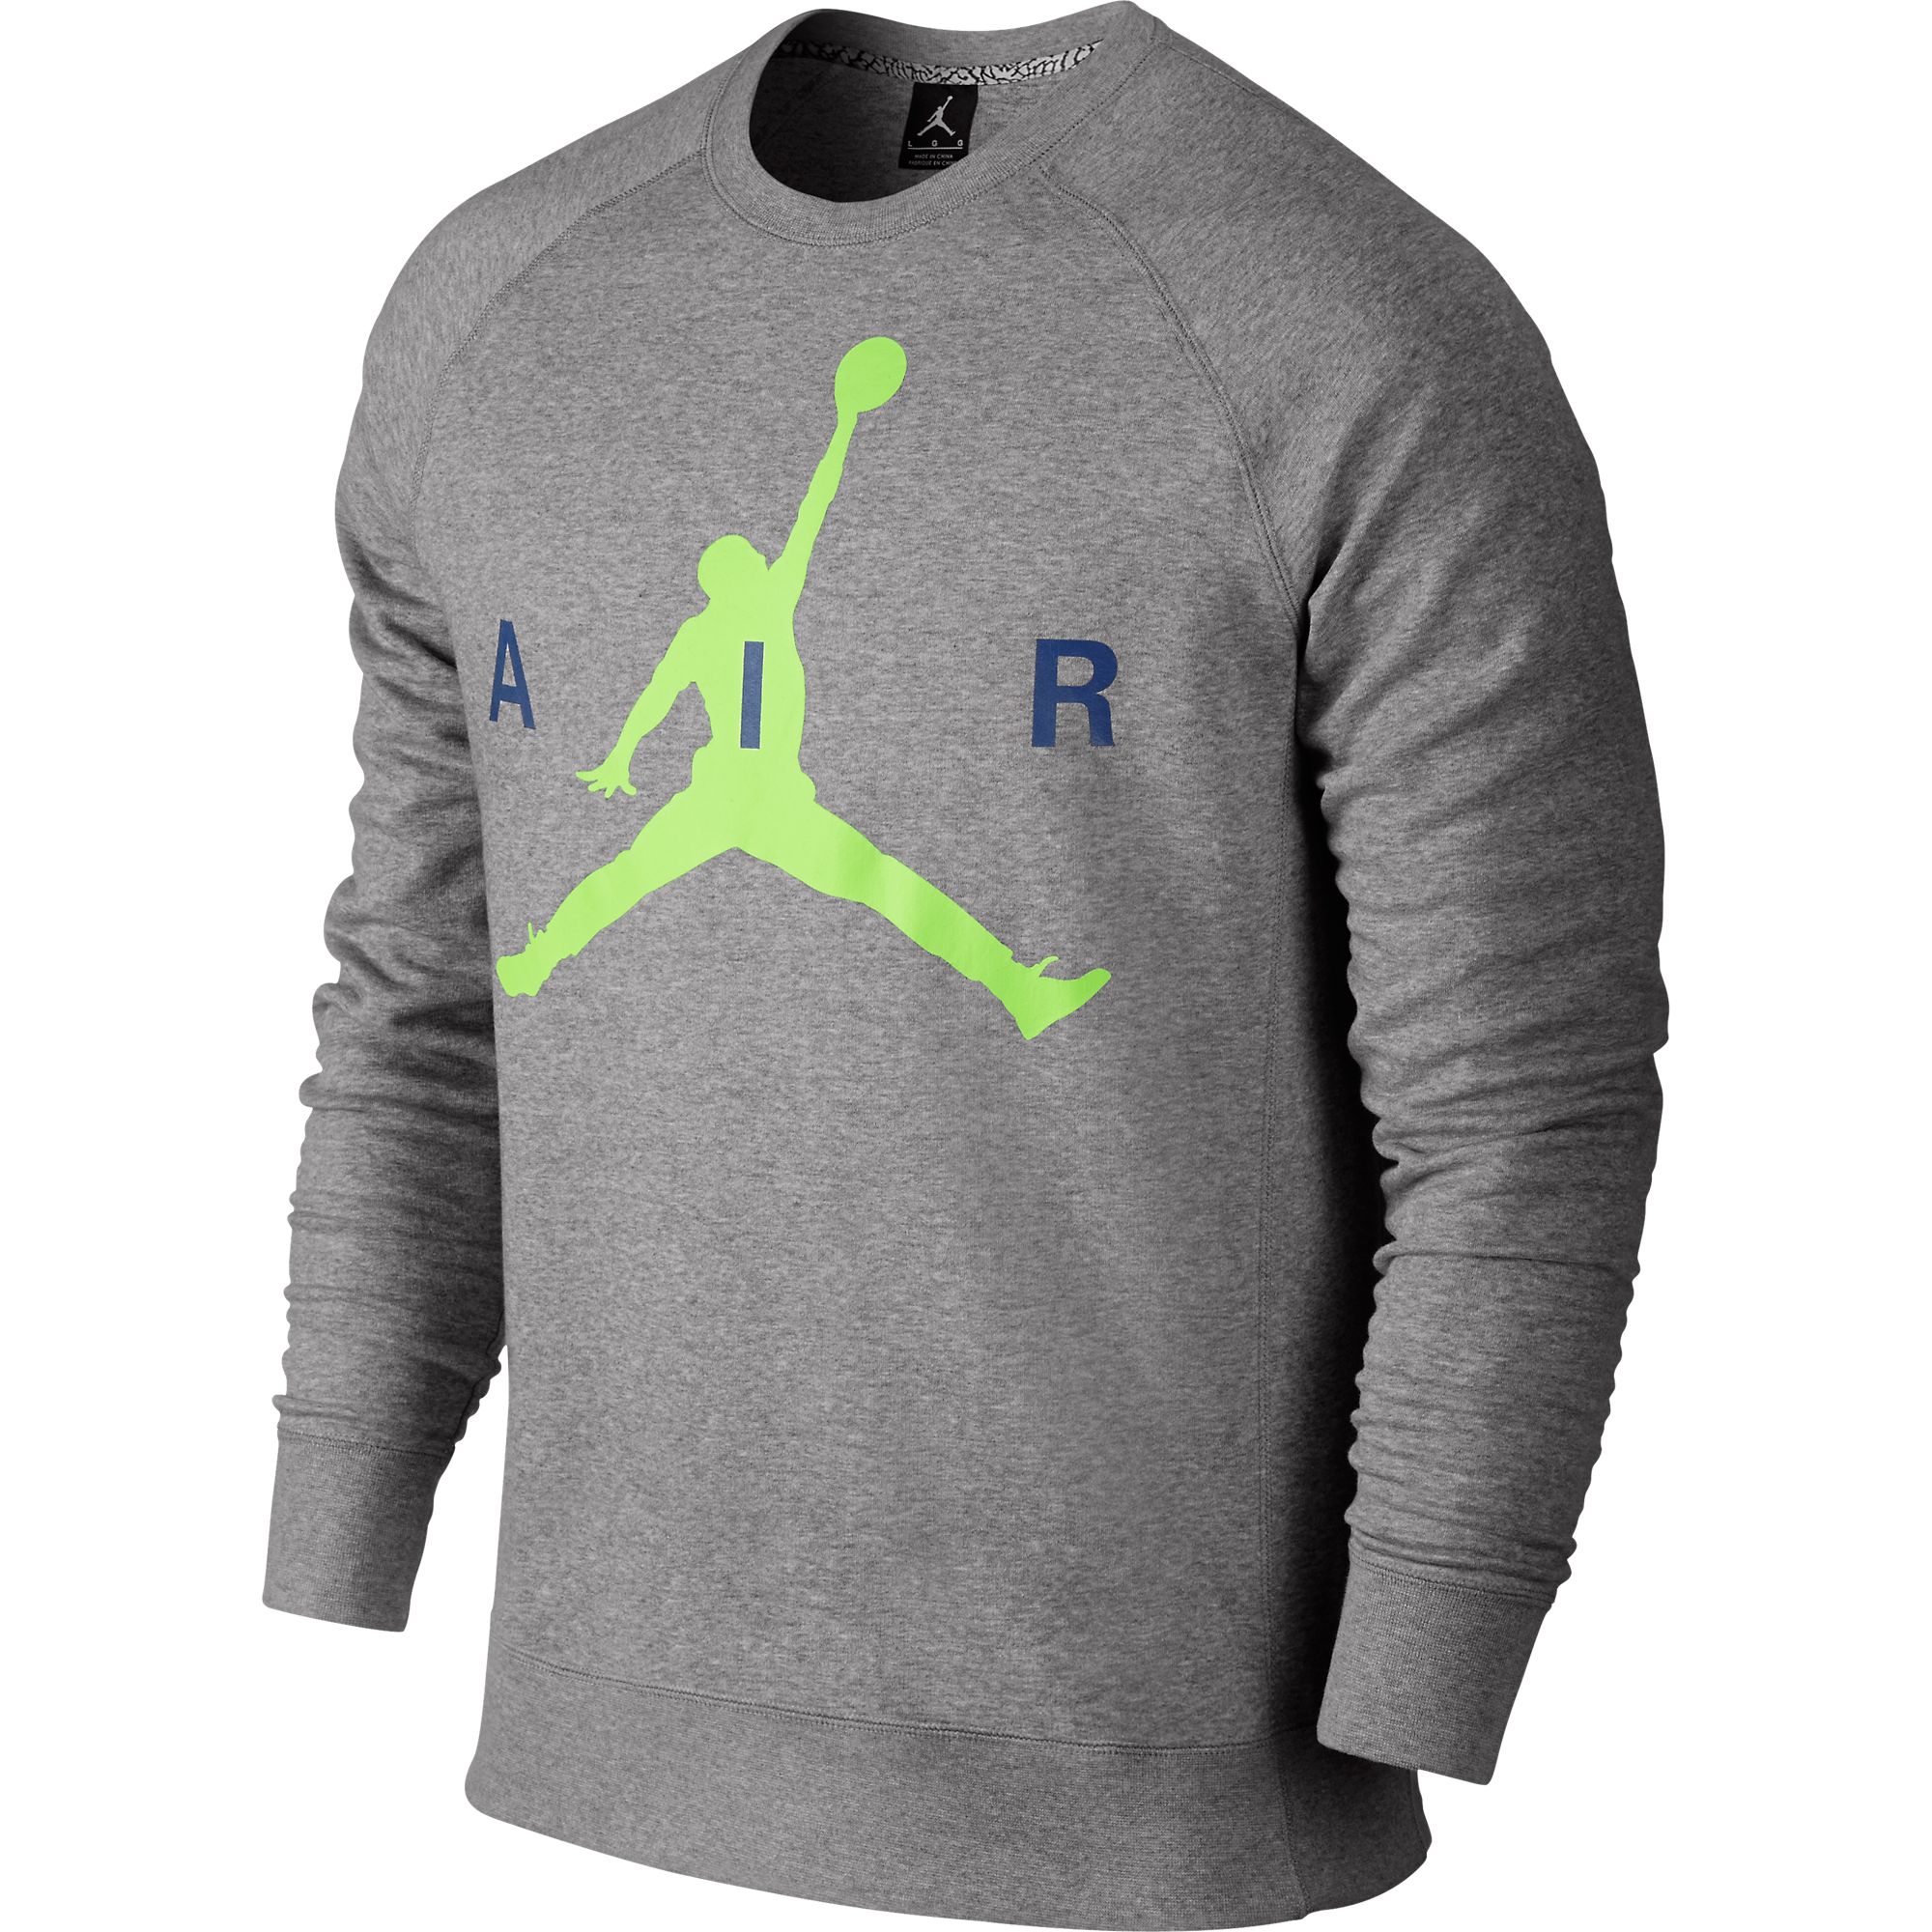  Air  Jordan  Jumpman Graphic Brushed Crew  Mens Sweatshirt 